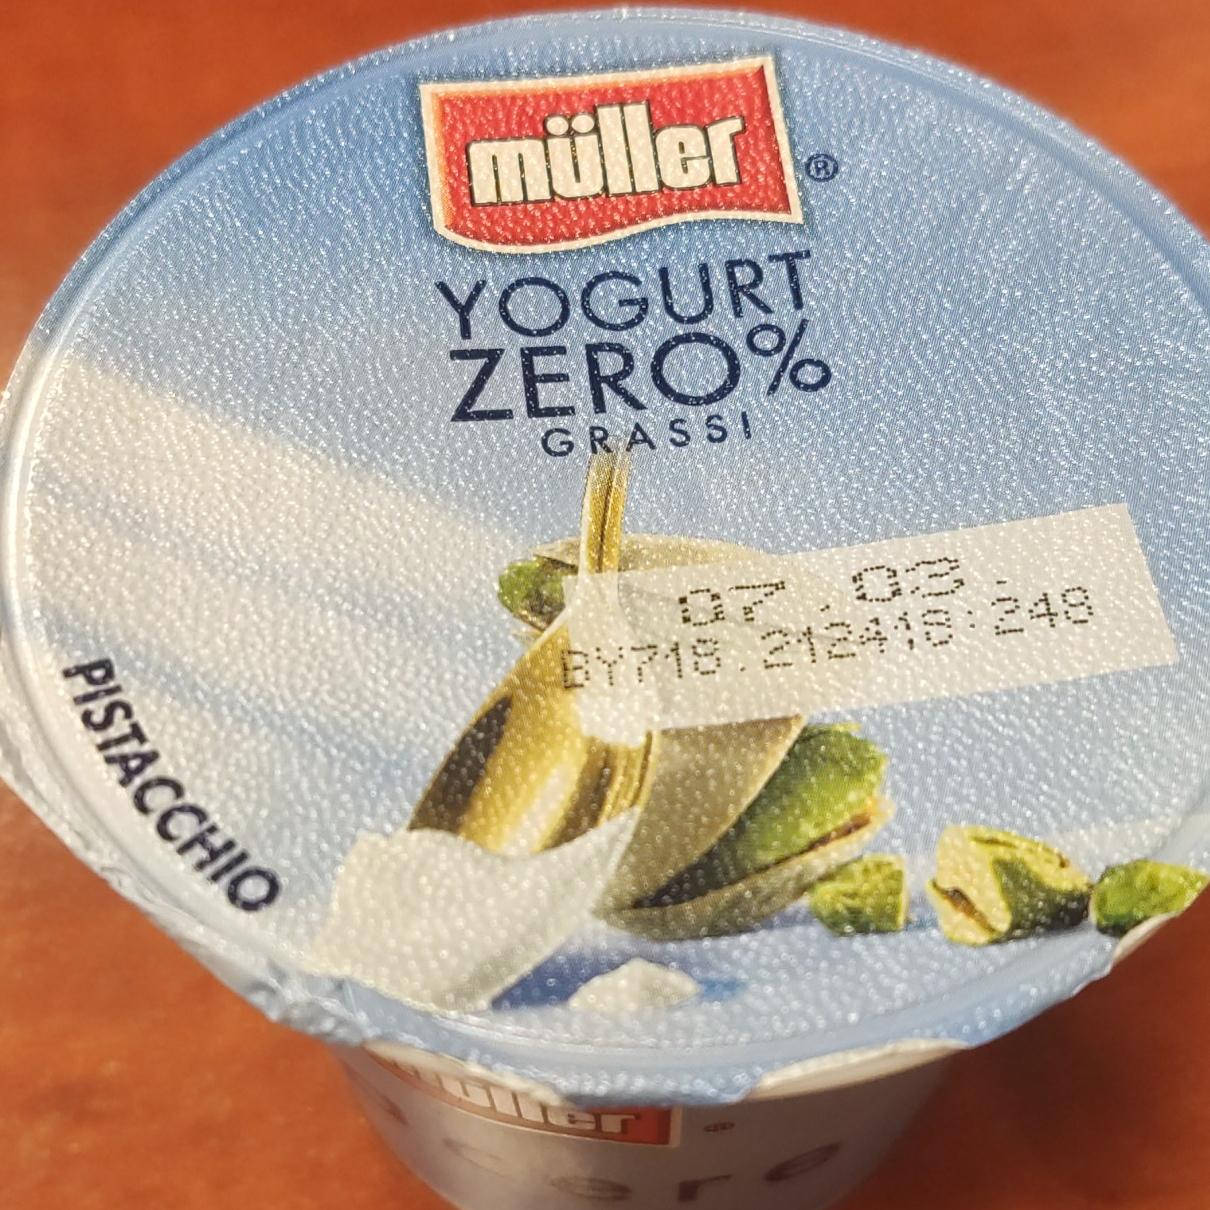 Fotografie - Yogurt Zero% Grassi Pistacchio Müller